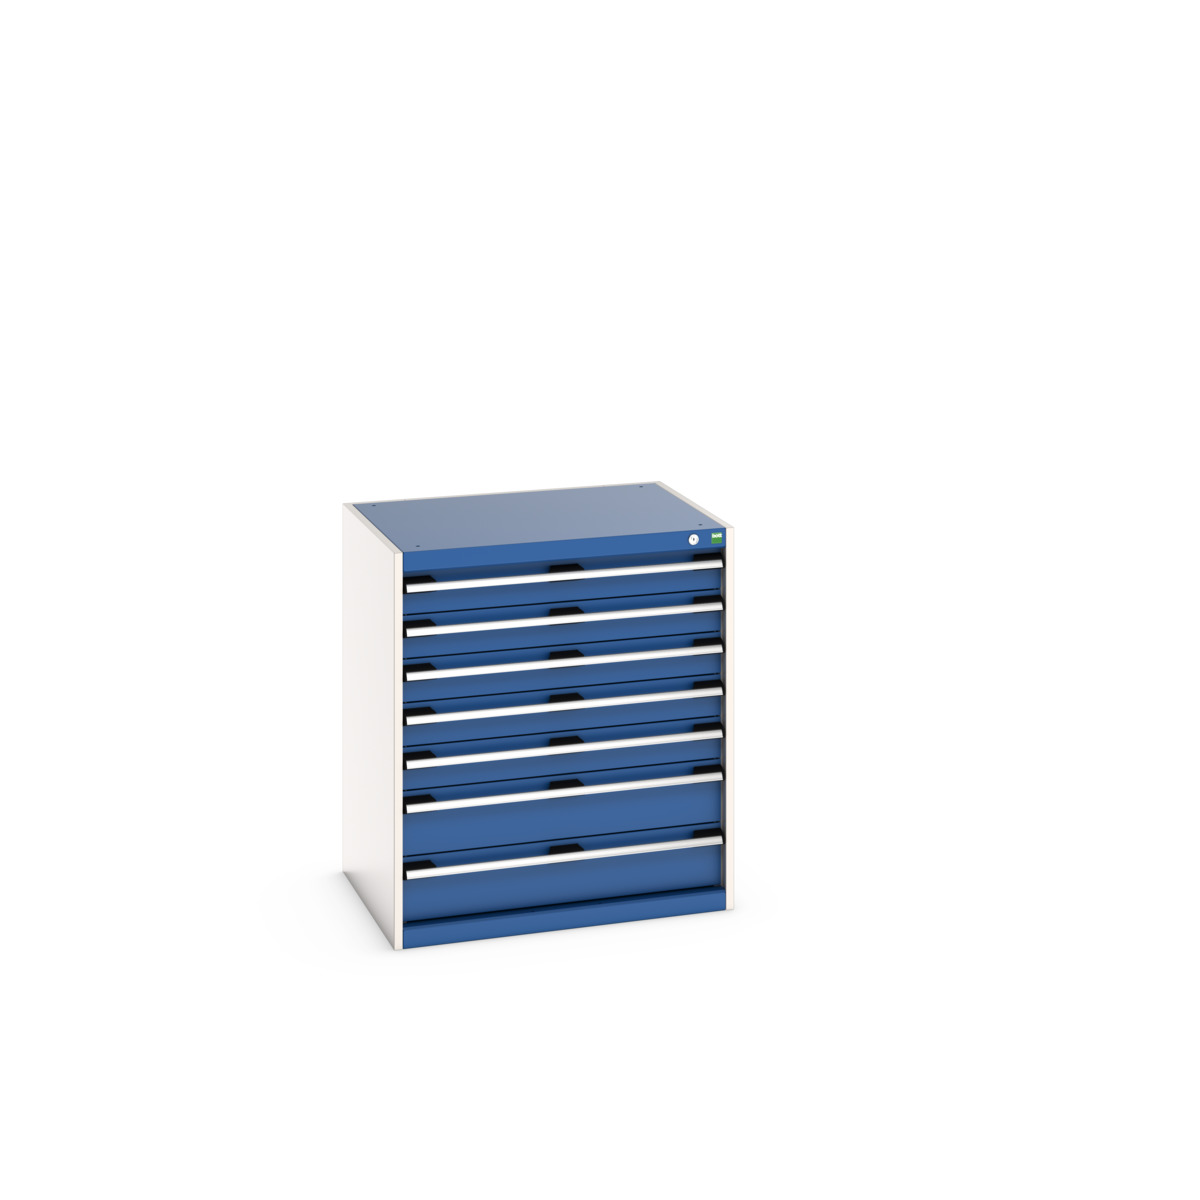 40020041.11V - cubio drawer cabinet